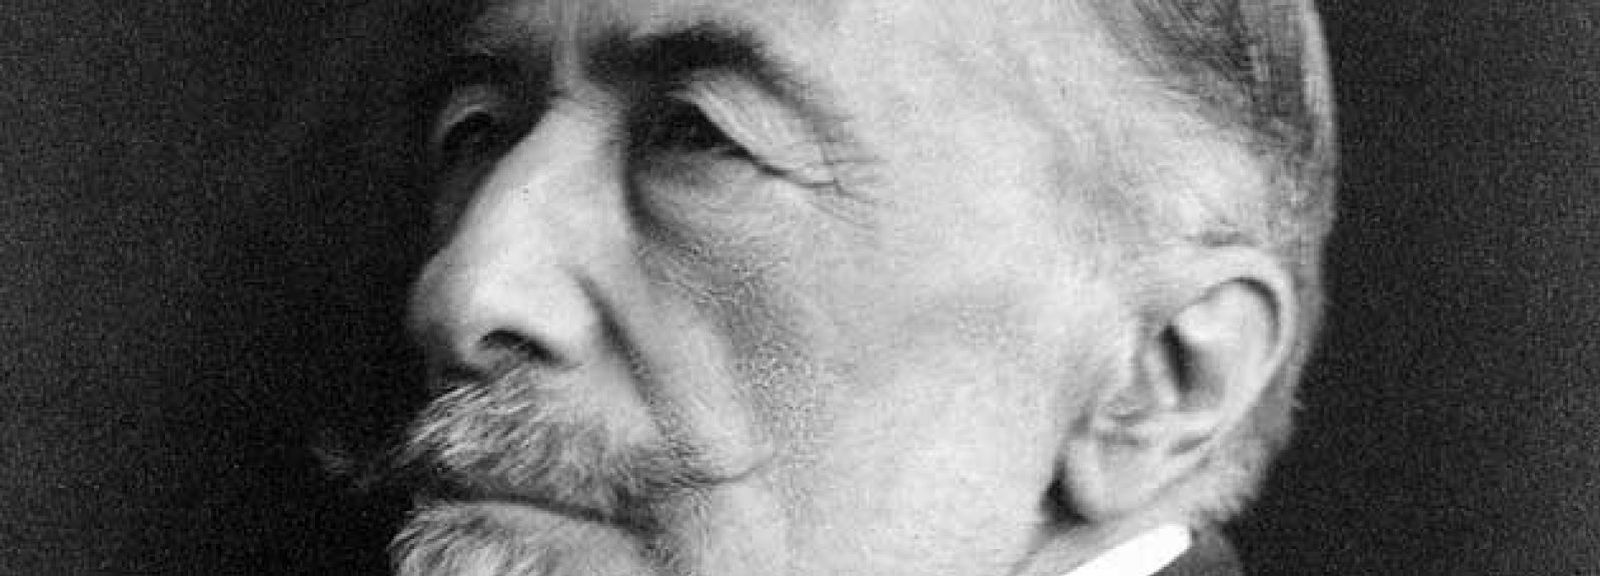 Foto: Joseph Conrad, 150 años bajo la mirada de occidente